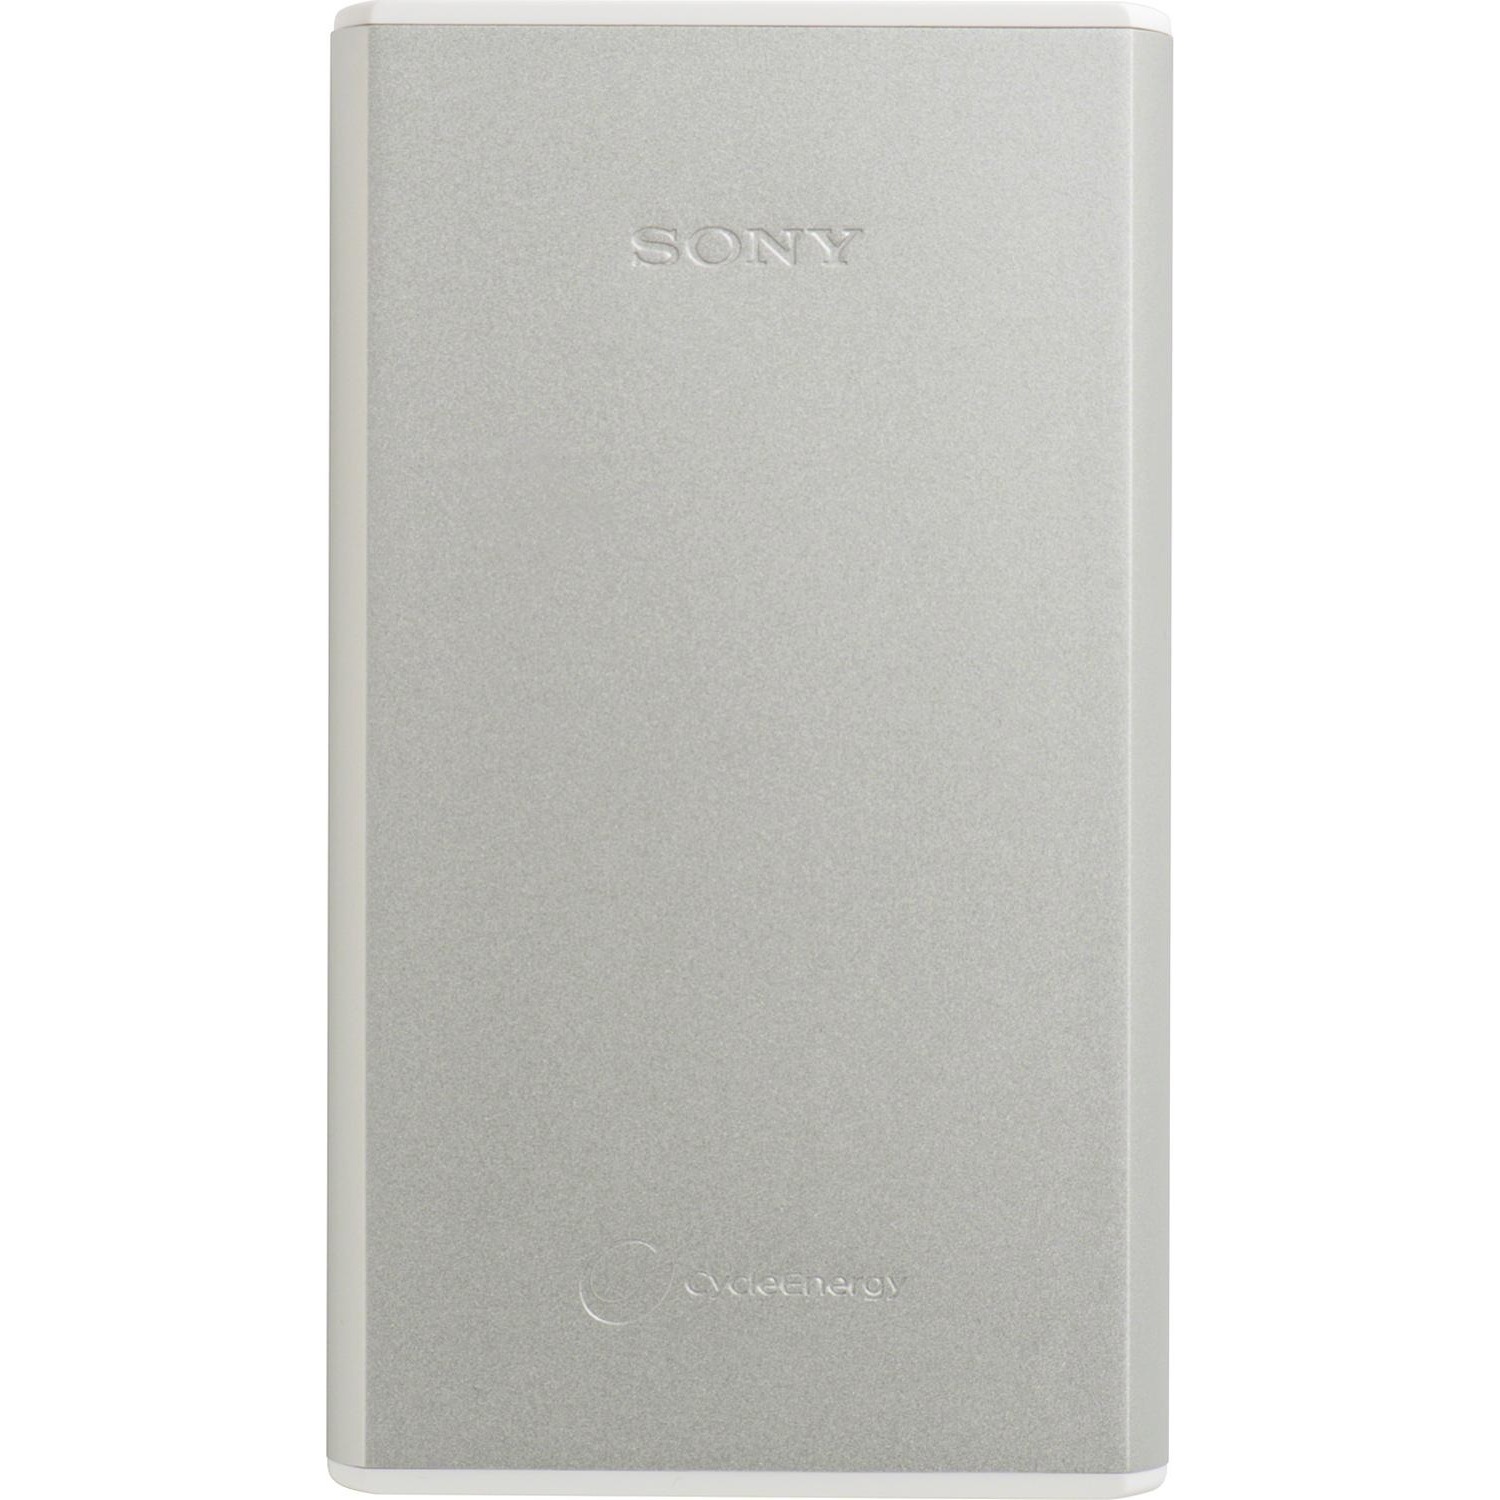 Immagine per Powerbank Sony USB 15000 mAh argento da DIMOStore